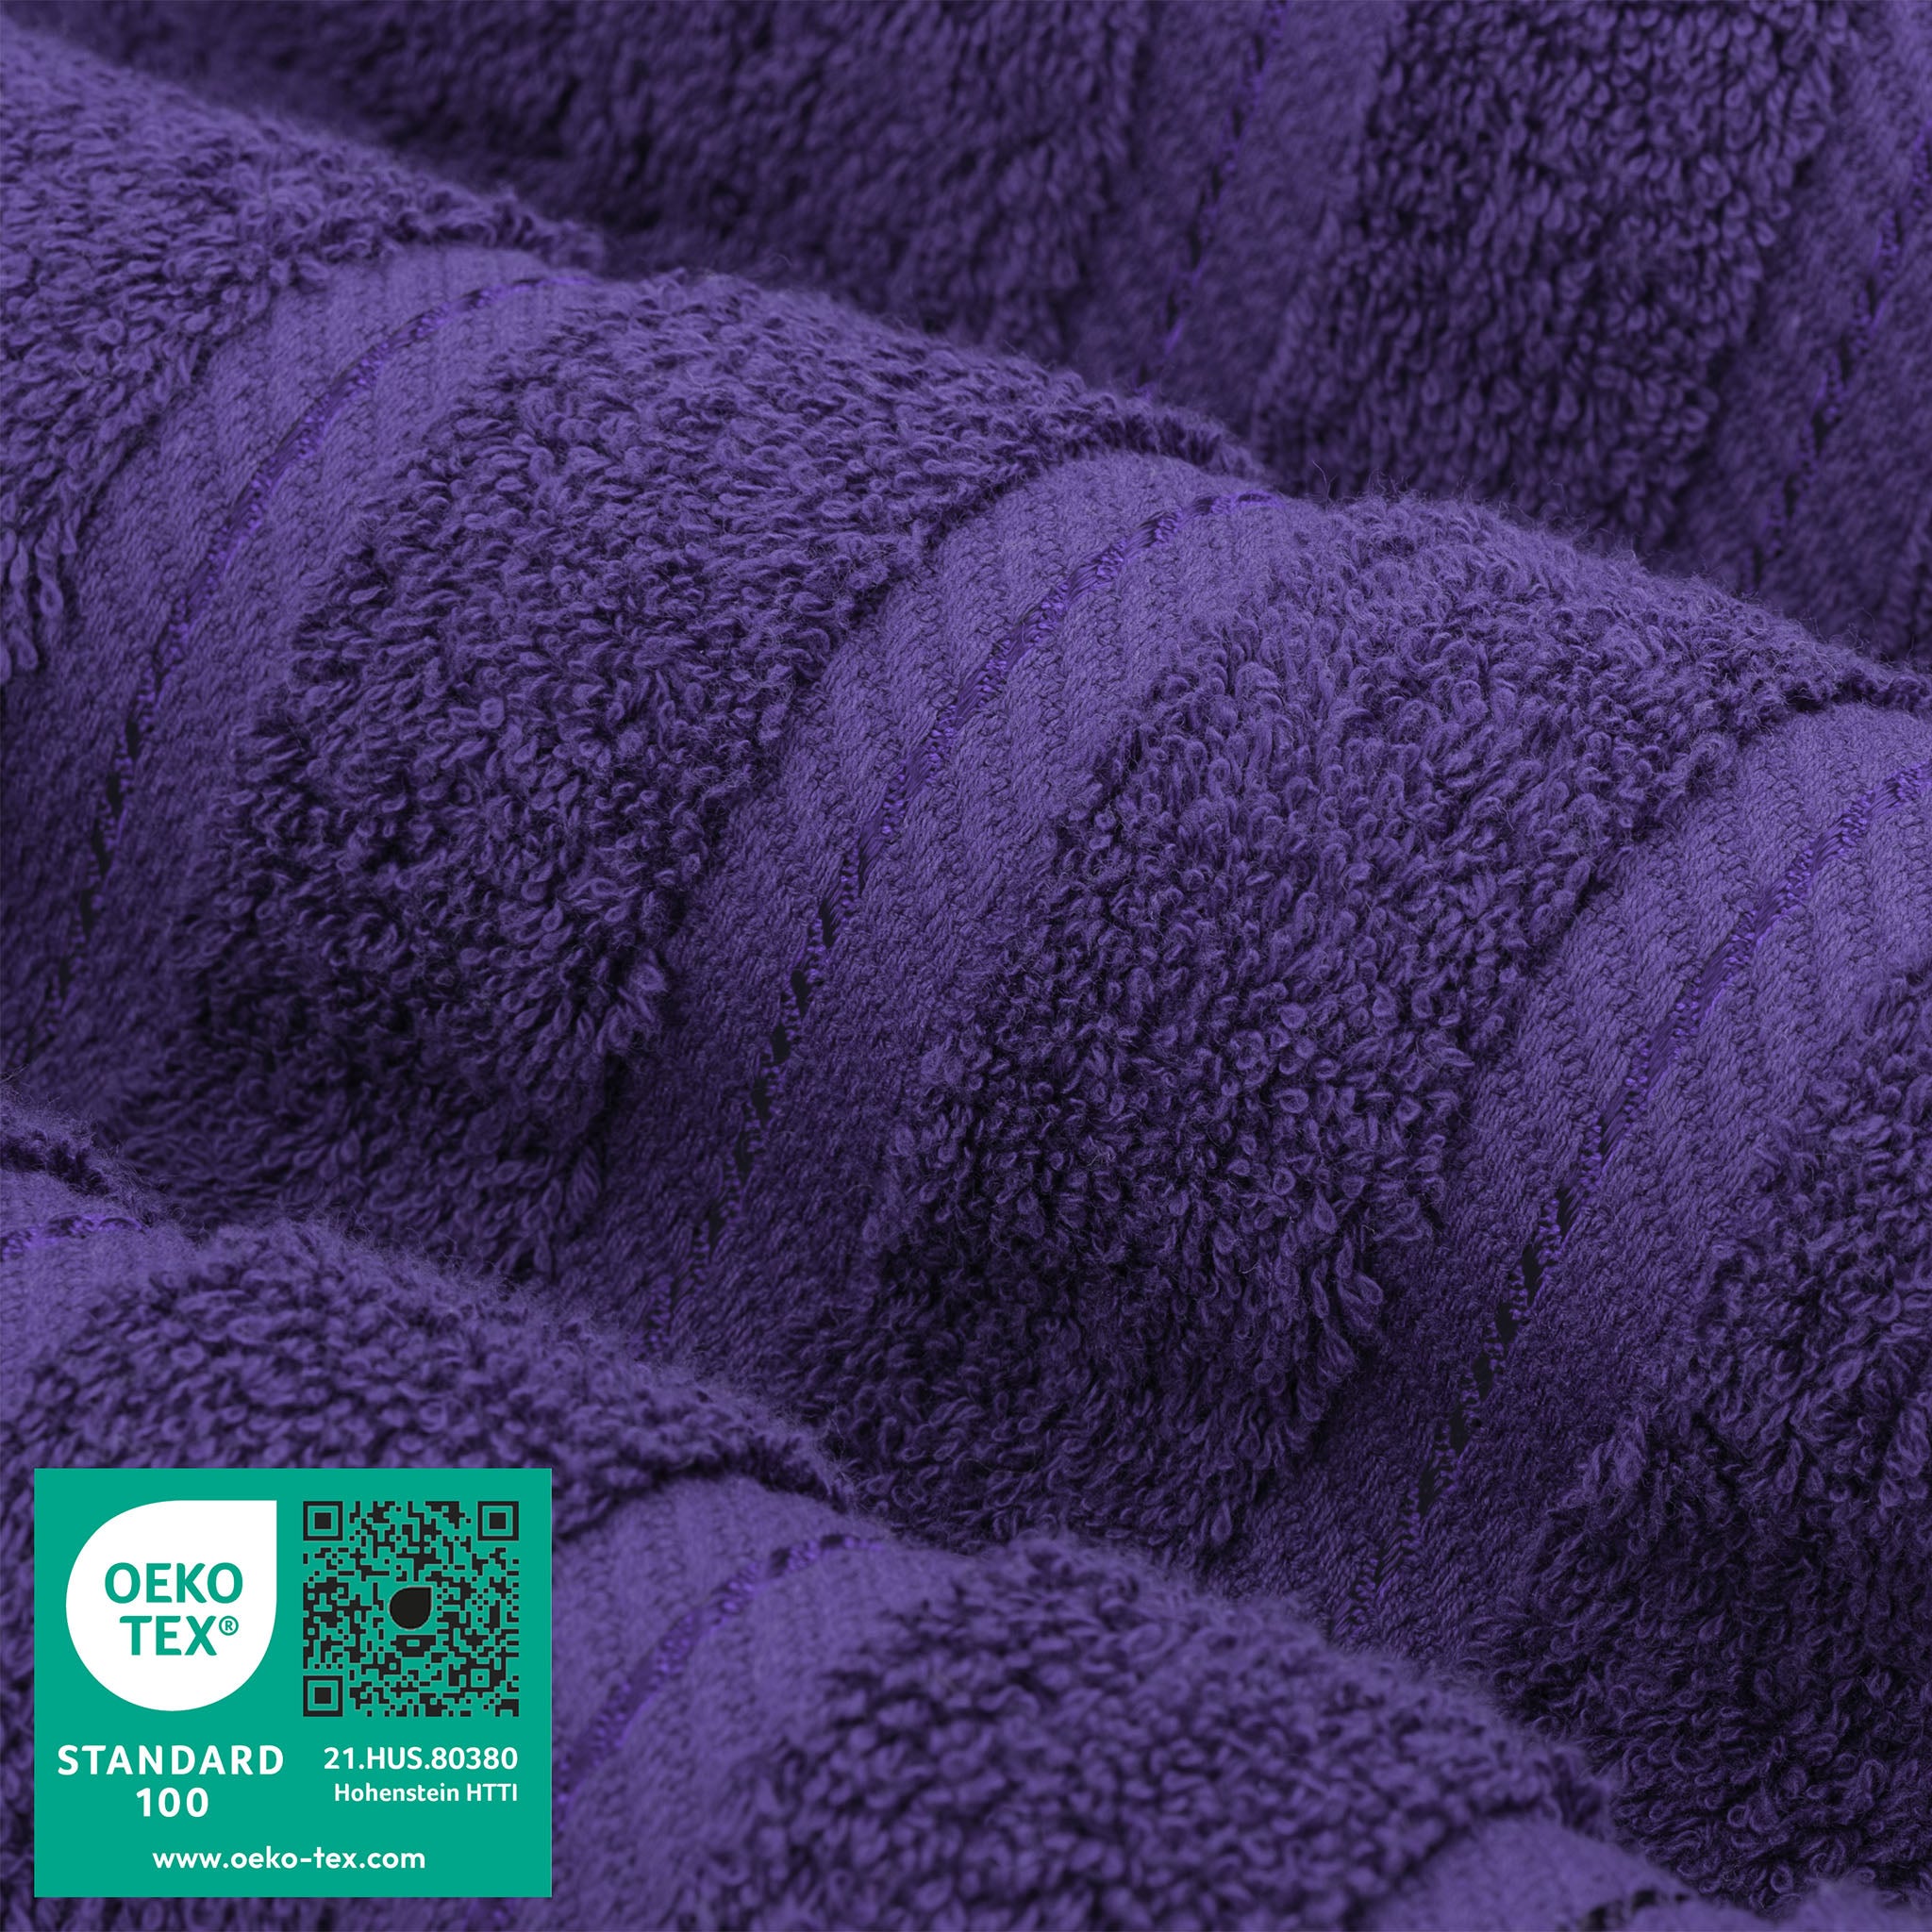 American Soft Linen 100% Turkish Cotton 4 Pack Bath Towel Set Wholesale purple-3